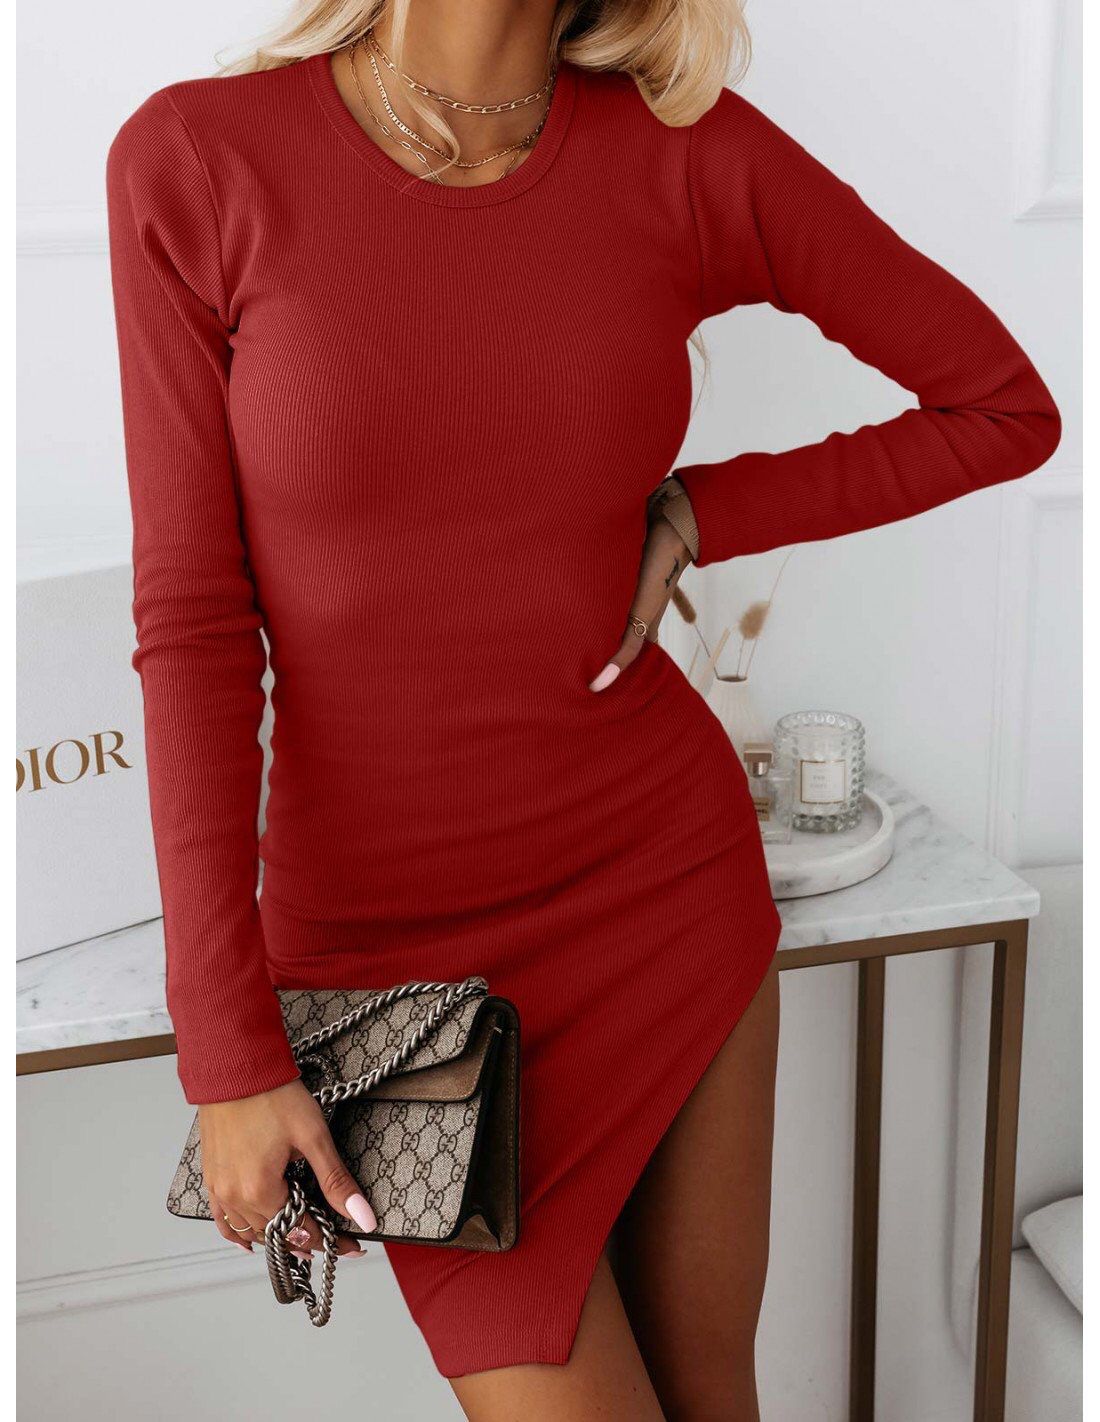 Дамска рокля INNA  https://bvseductive.com/products/дамска-рокля-inna-2  рокля в миди дължина за ежедневието в червен цвят изработена от мека материя в изчистен дизайн вталена кройка, подчертаваща извивките на тялото с голяма секси цепка интересно предложение, с което ще направите впечатление&nbsp;